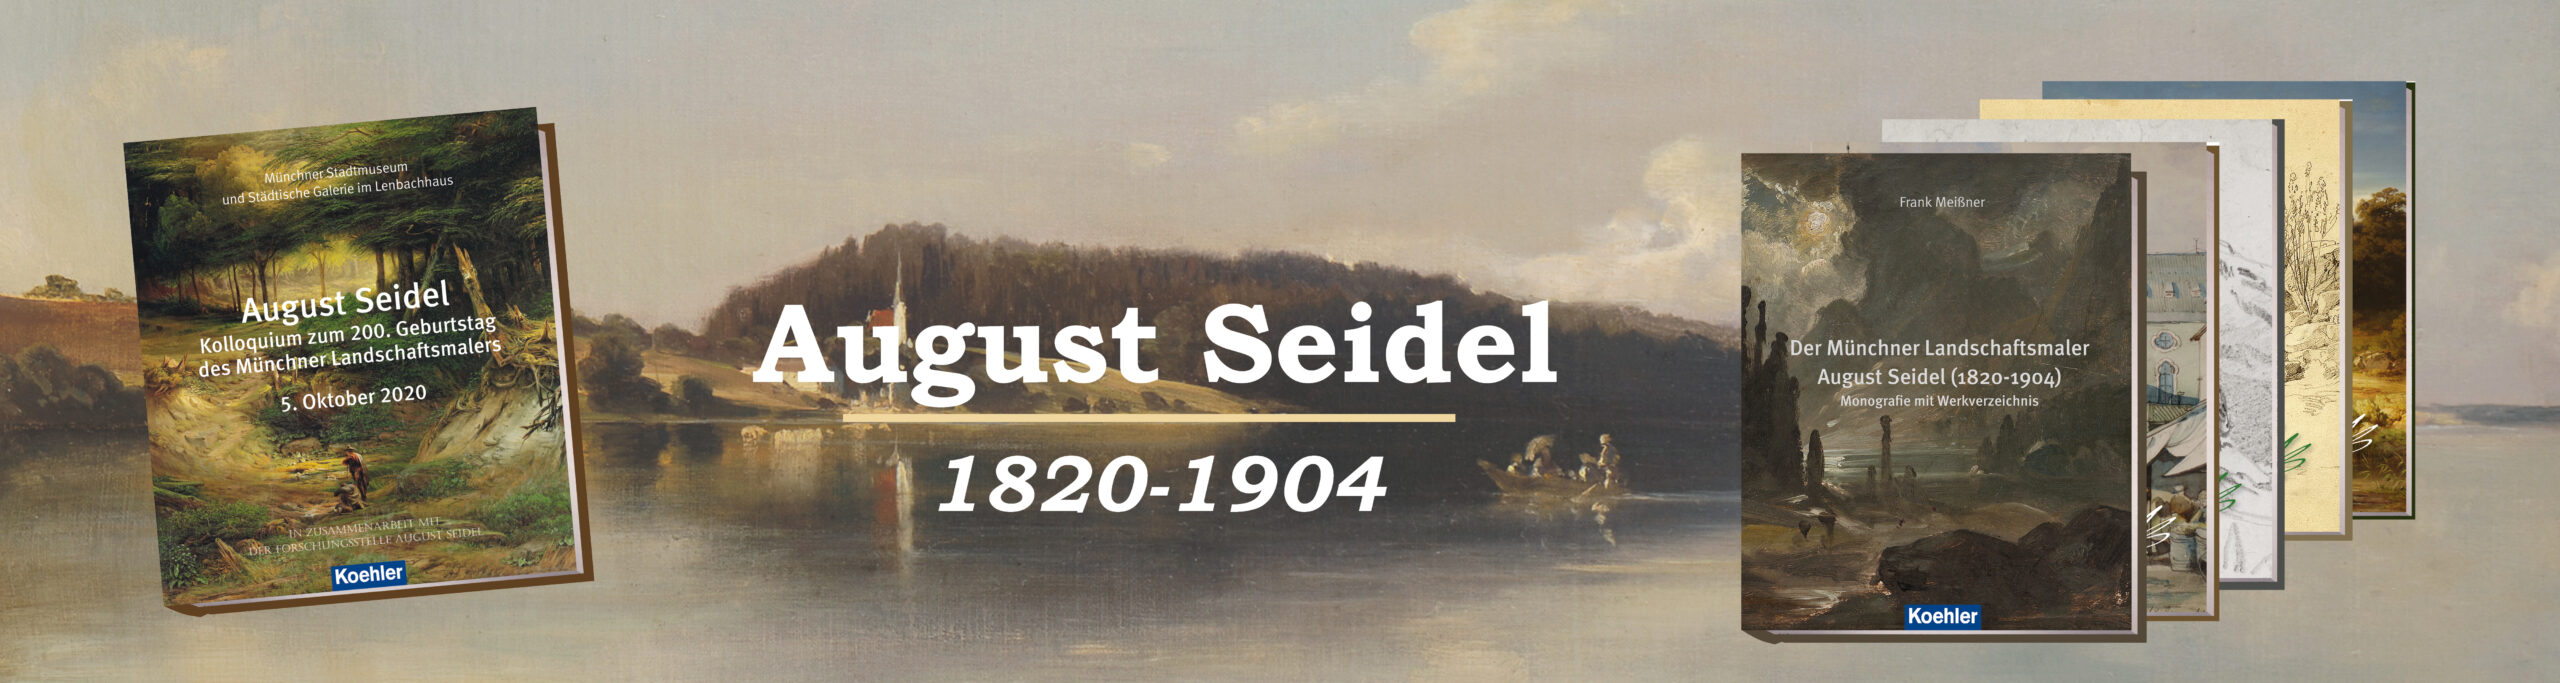 August Seidel Slider